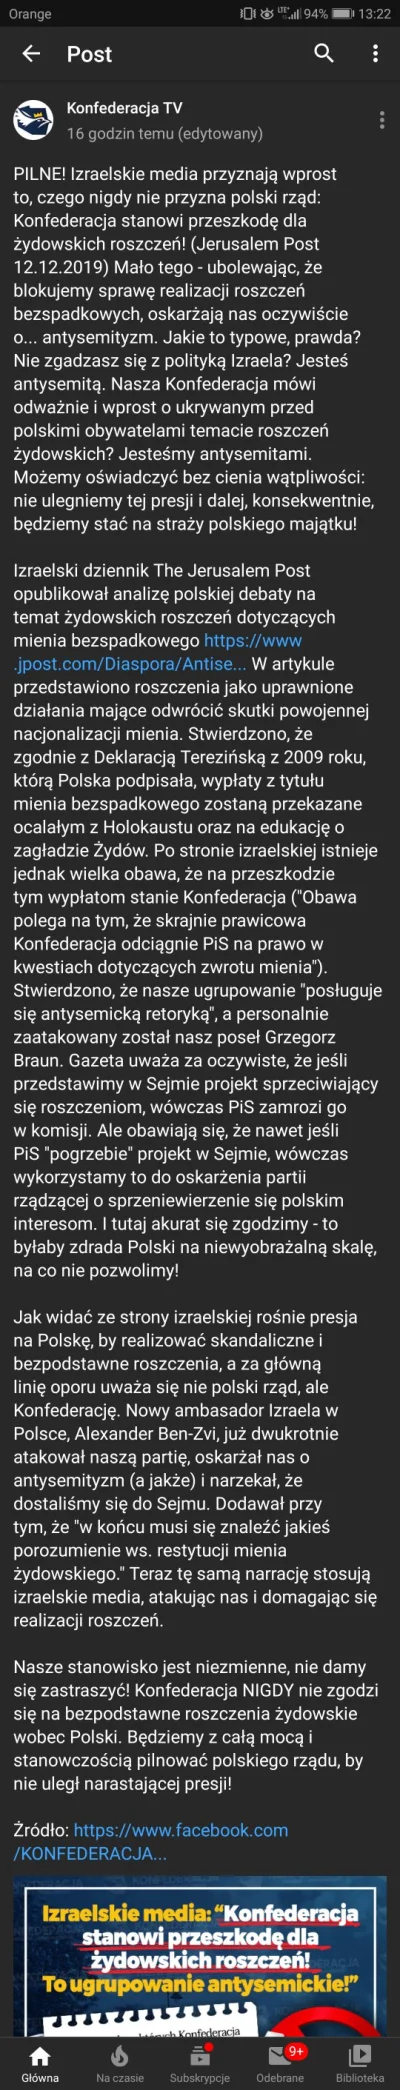 M.....z - #konfederacja #4konserwy #neuropa #polska
#wyznaniepieniężne.

To już chyba...